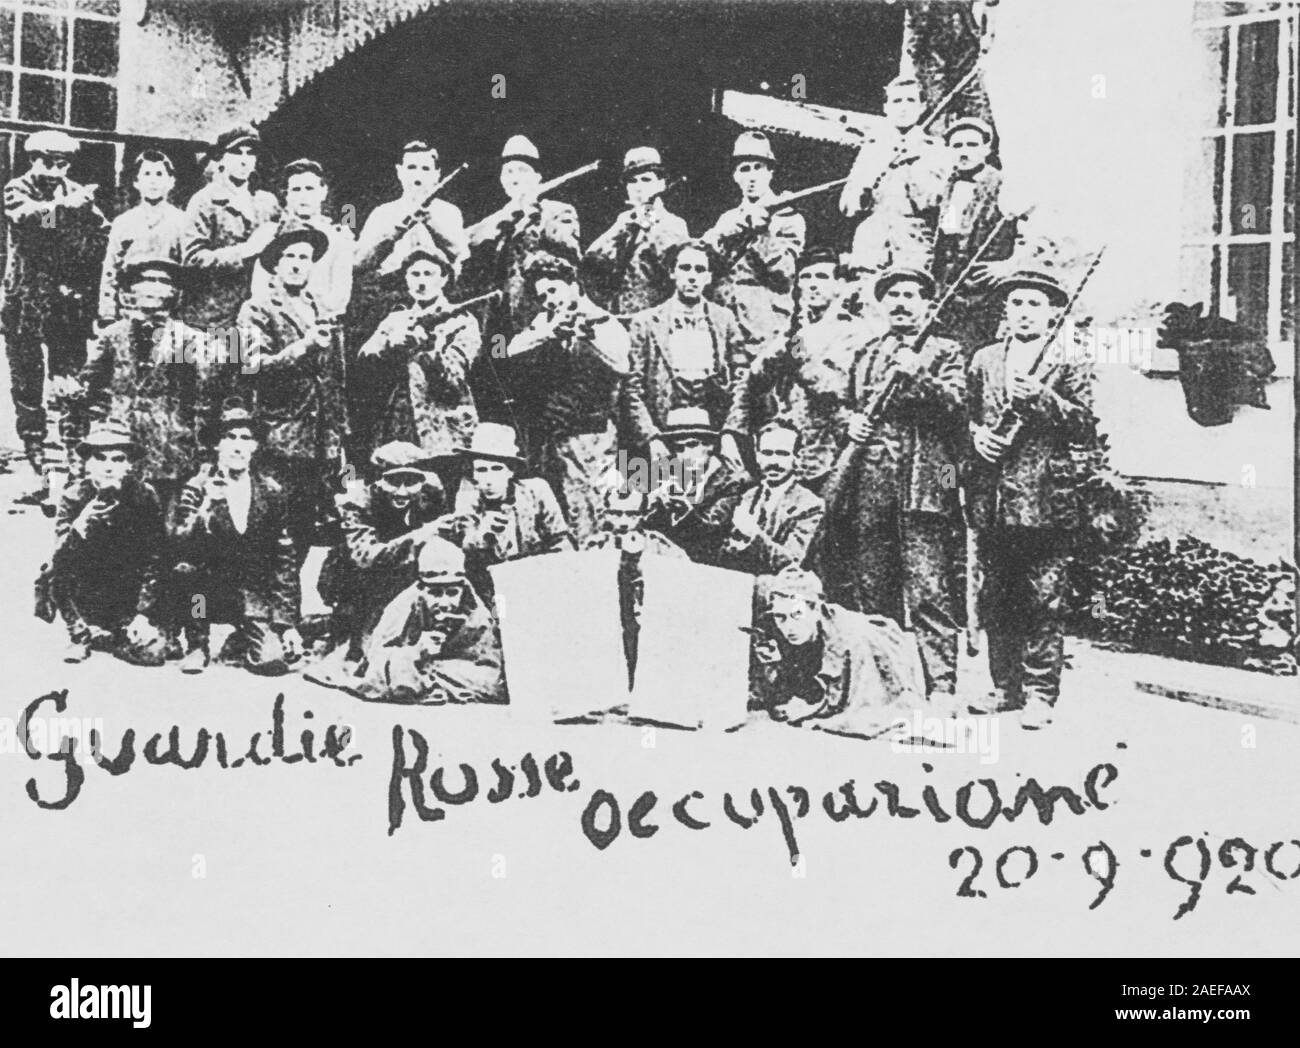 Le guardie rosse fabbrica occupata, Torino, Italia, XX SETTEMBRE 1920, collezione privata Foto Stock